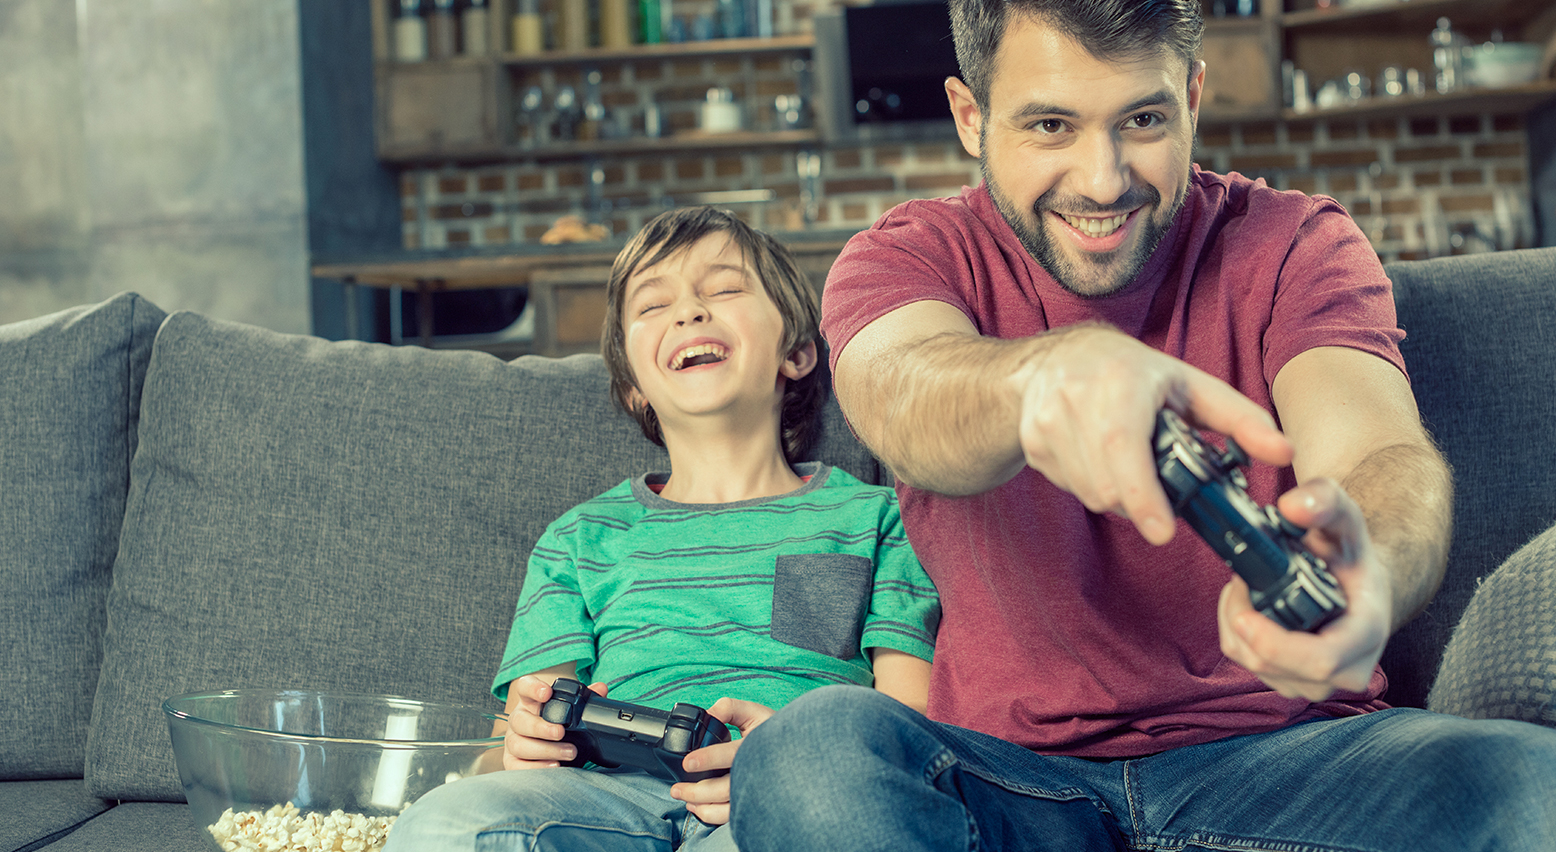 Junge und Vater sitzen auf der Couch mit Controllern in der Hand, gemeinsam ein Videospiel spielend